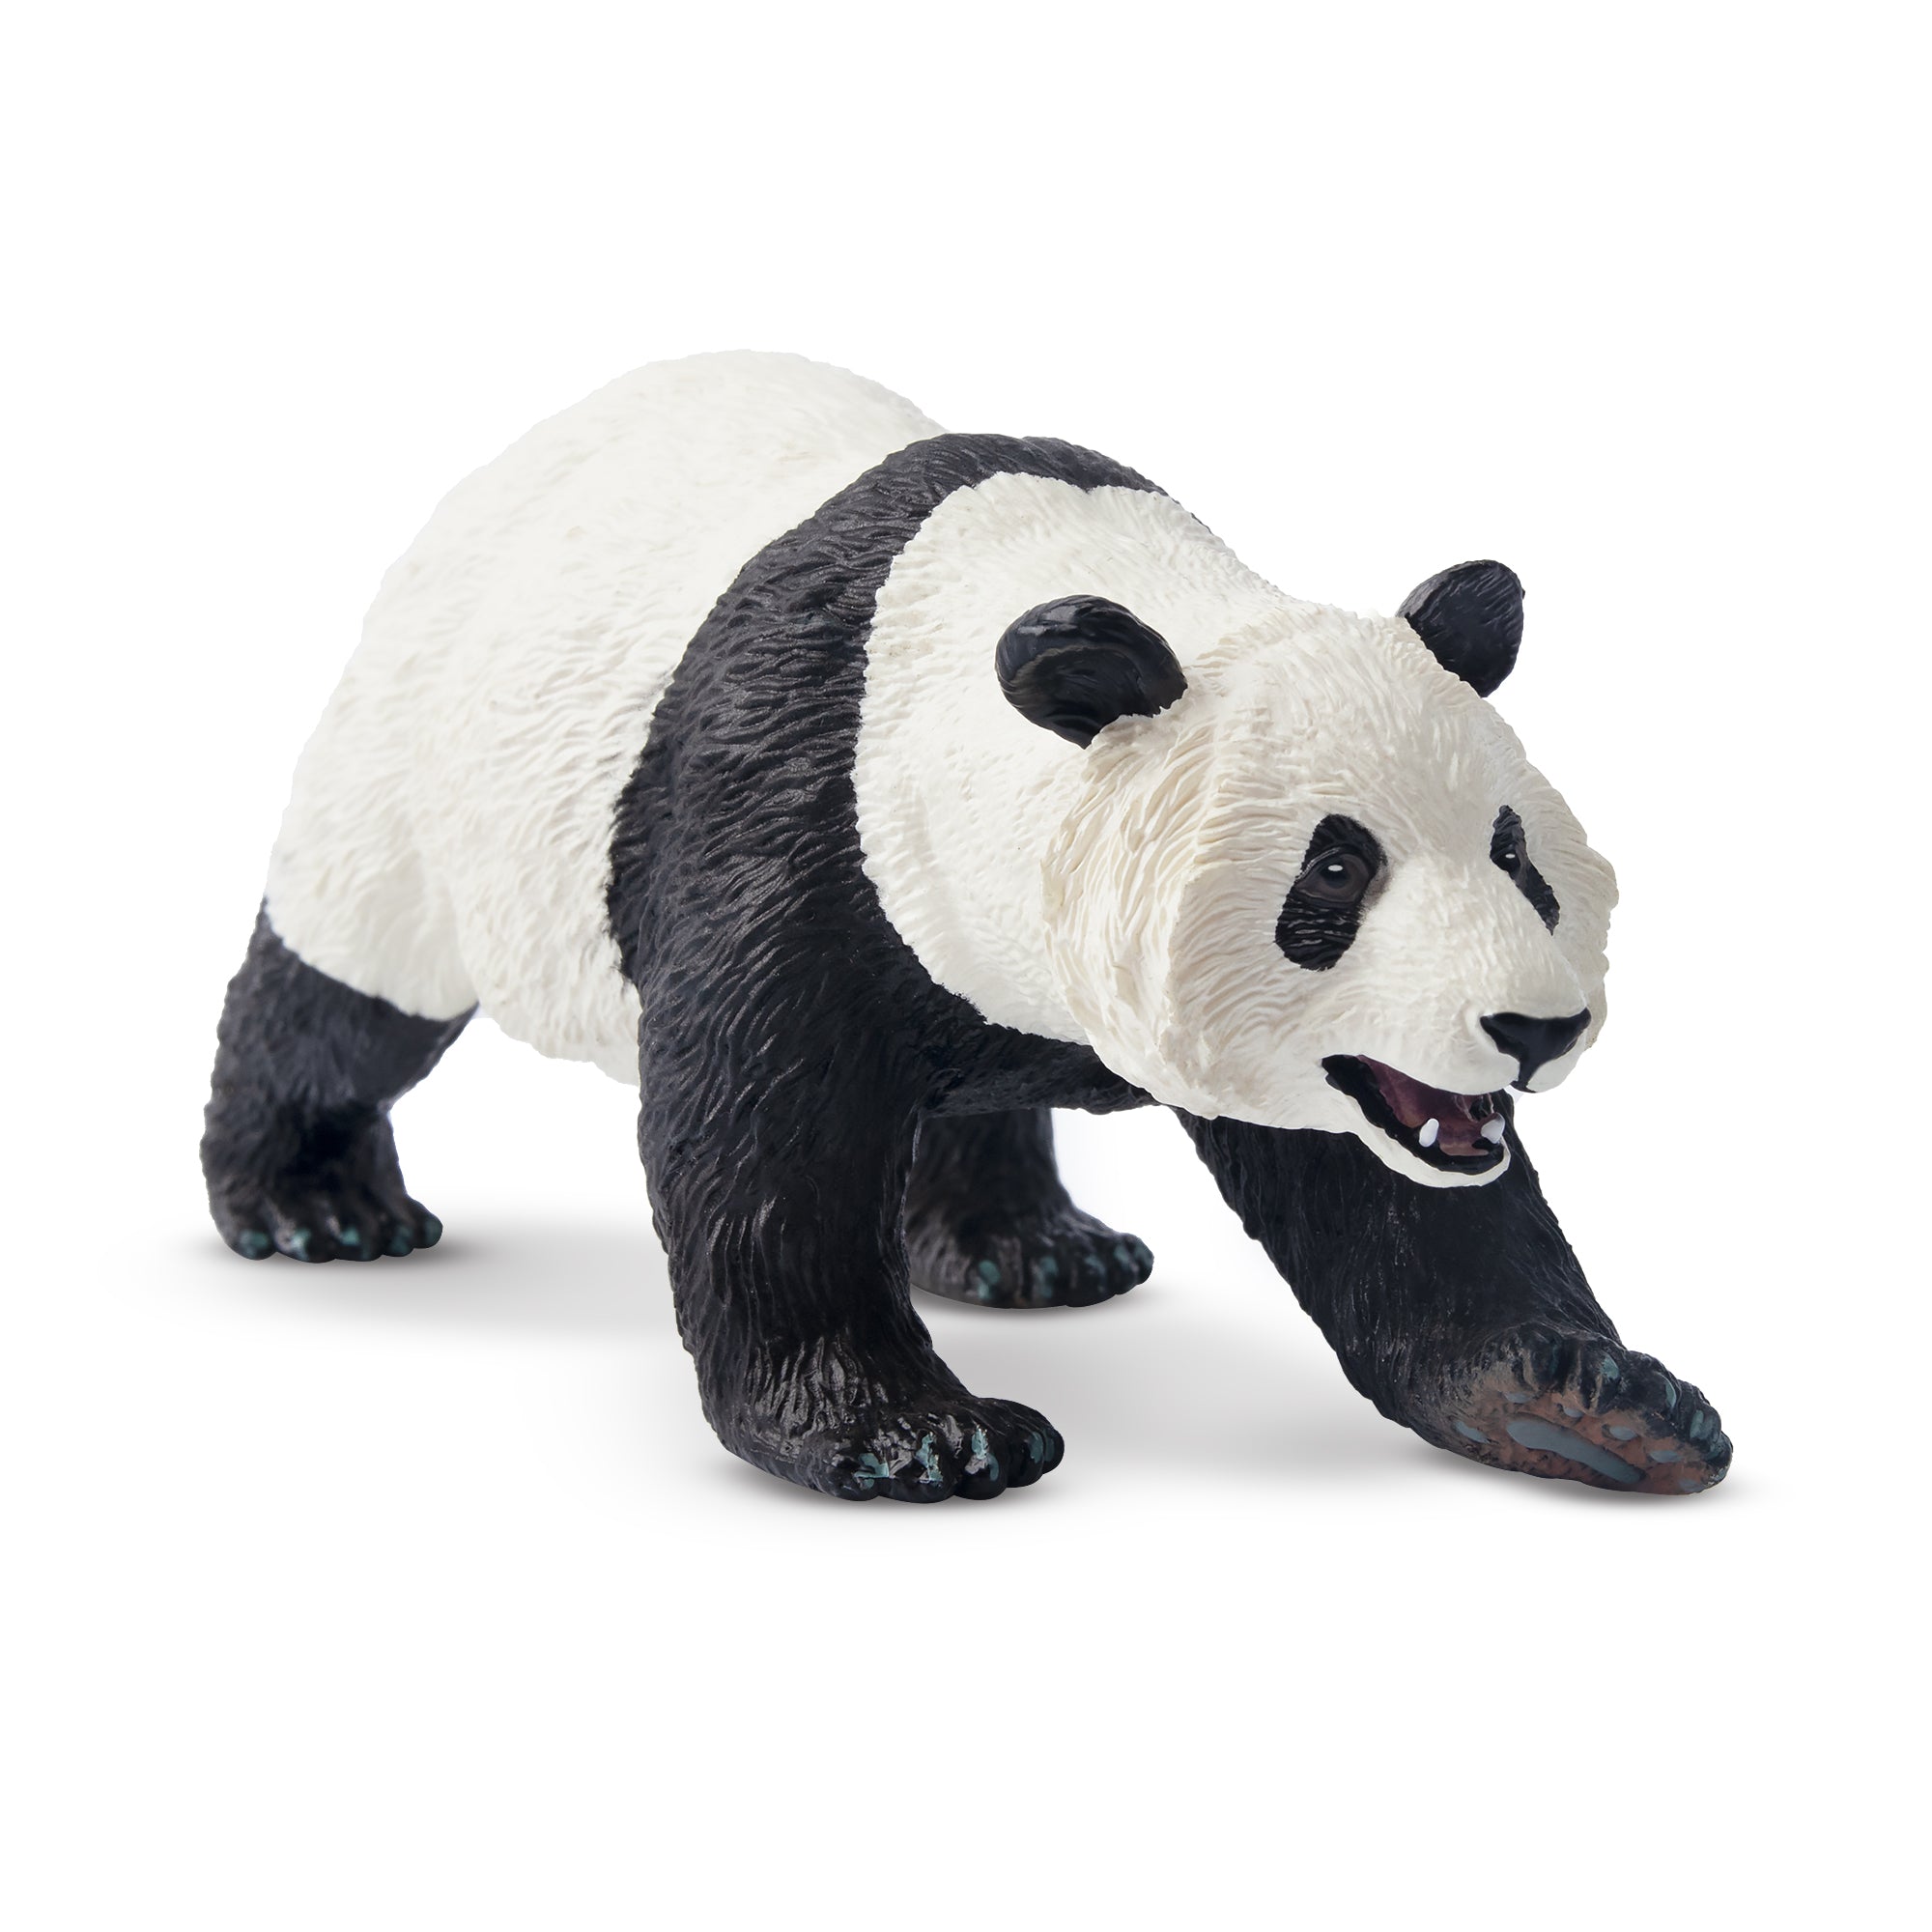 Toymany Female Giant Panda Figurine Toy